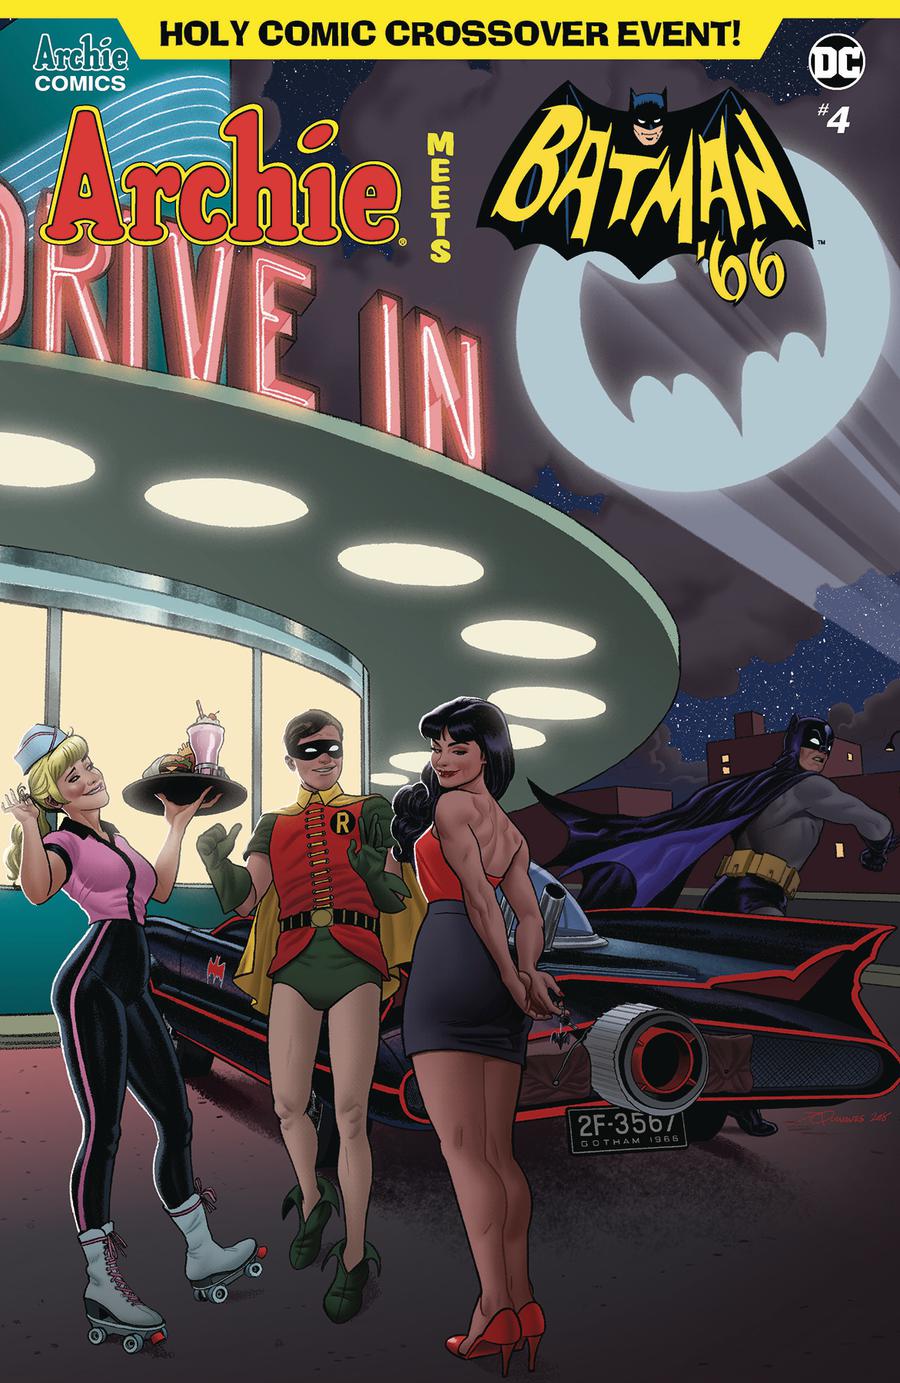 Archie Meets Batman 66 #4 Cover D Variant Joe Quinones Cover